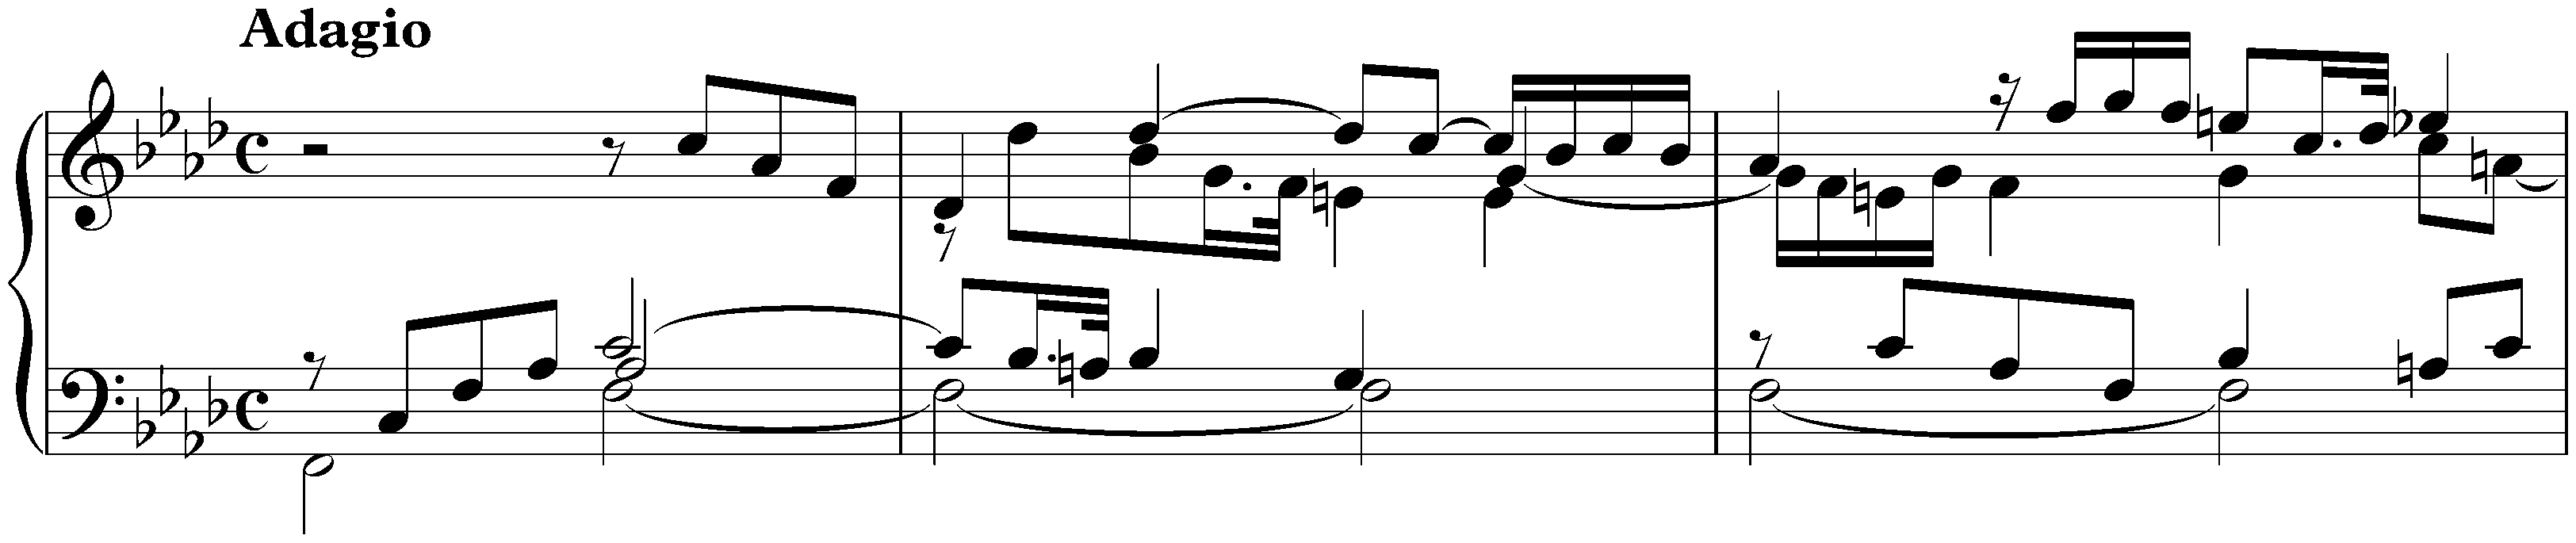 Suite in F minor, HWV 433; 1. Prélude: Adagio